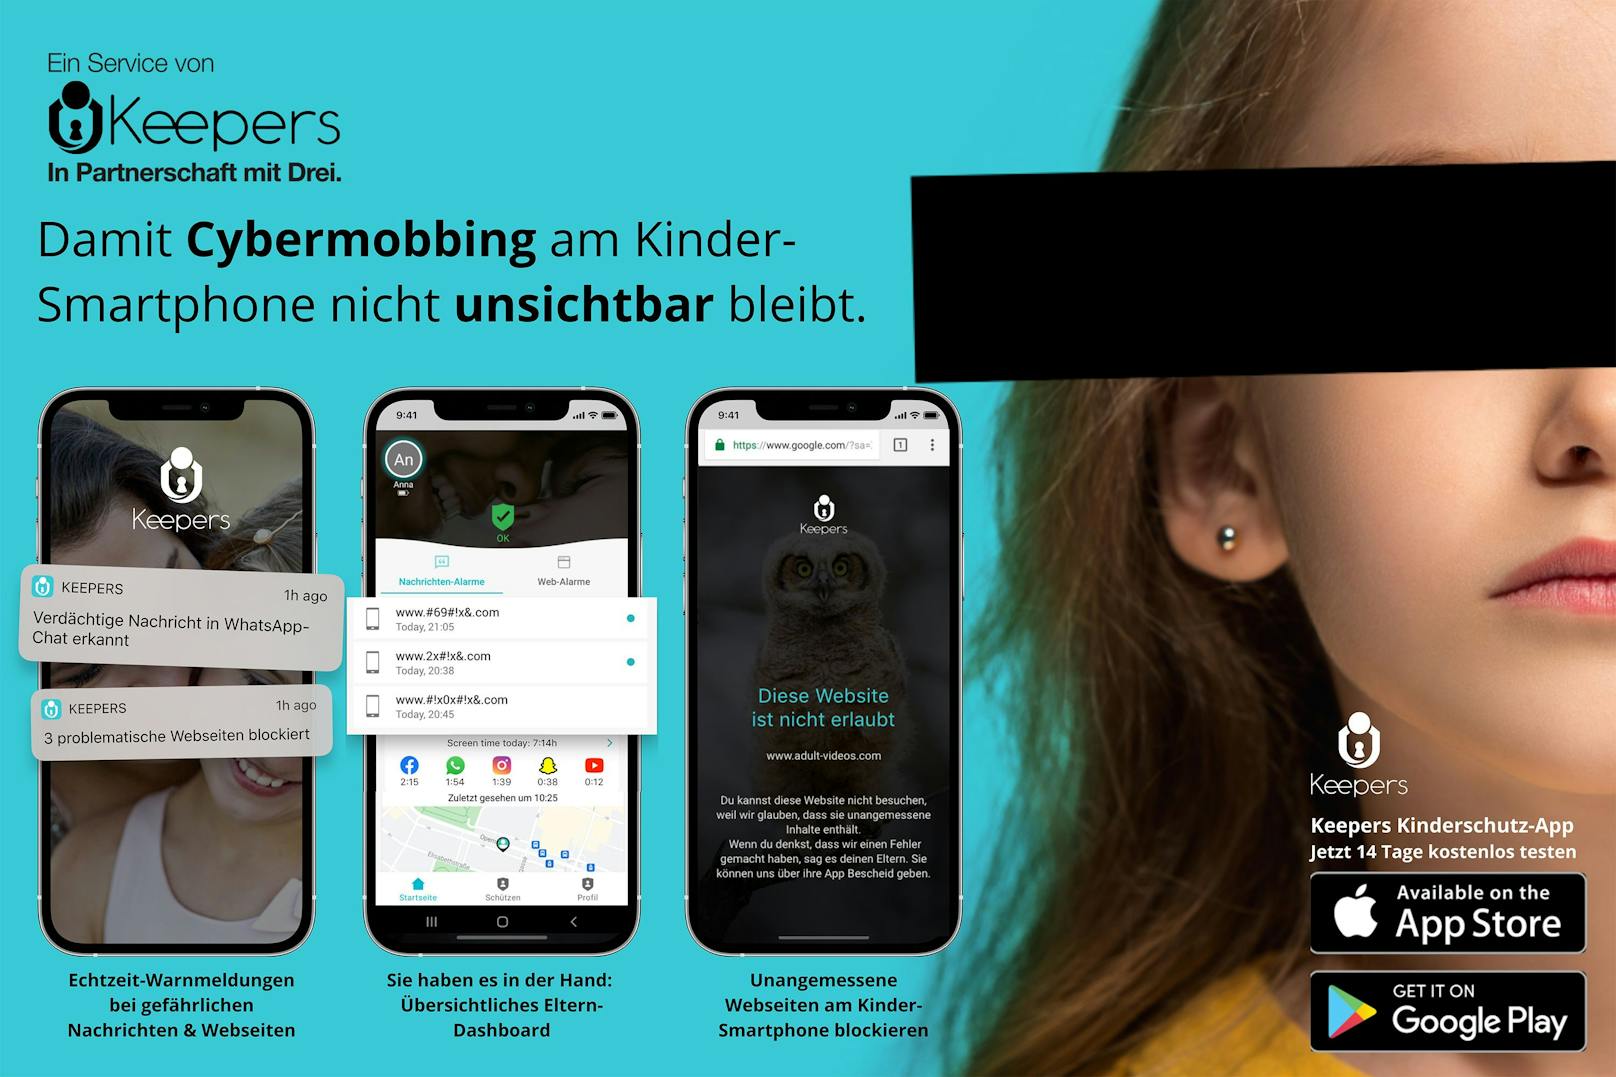 Neu bei Drei: Keepers startet Kinder-App zum Schutz vor Mobbing in sozialen Netzen.